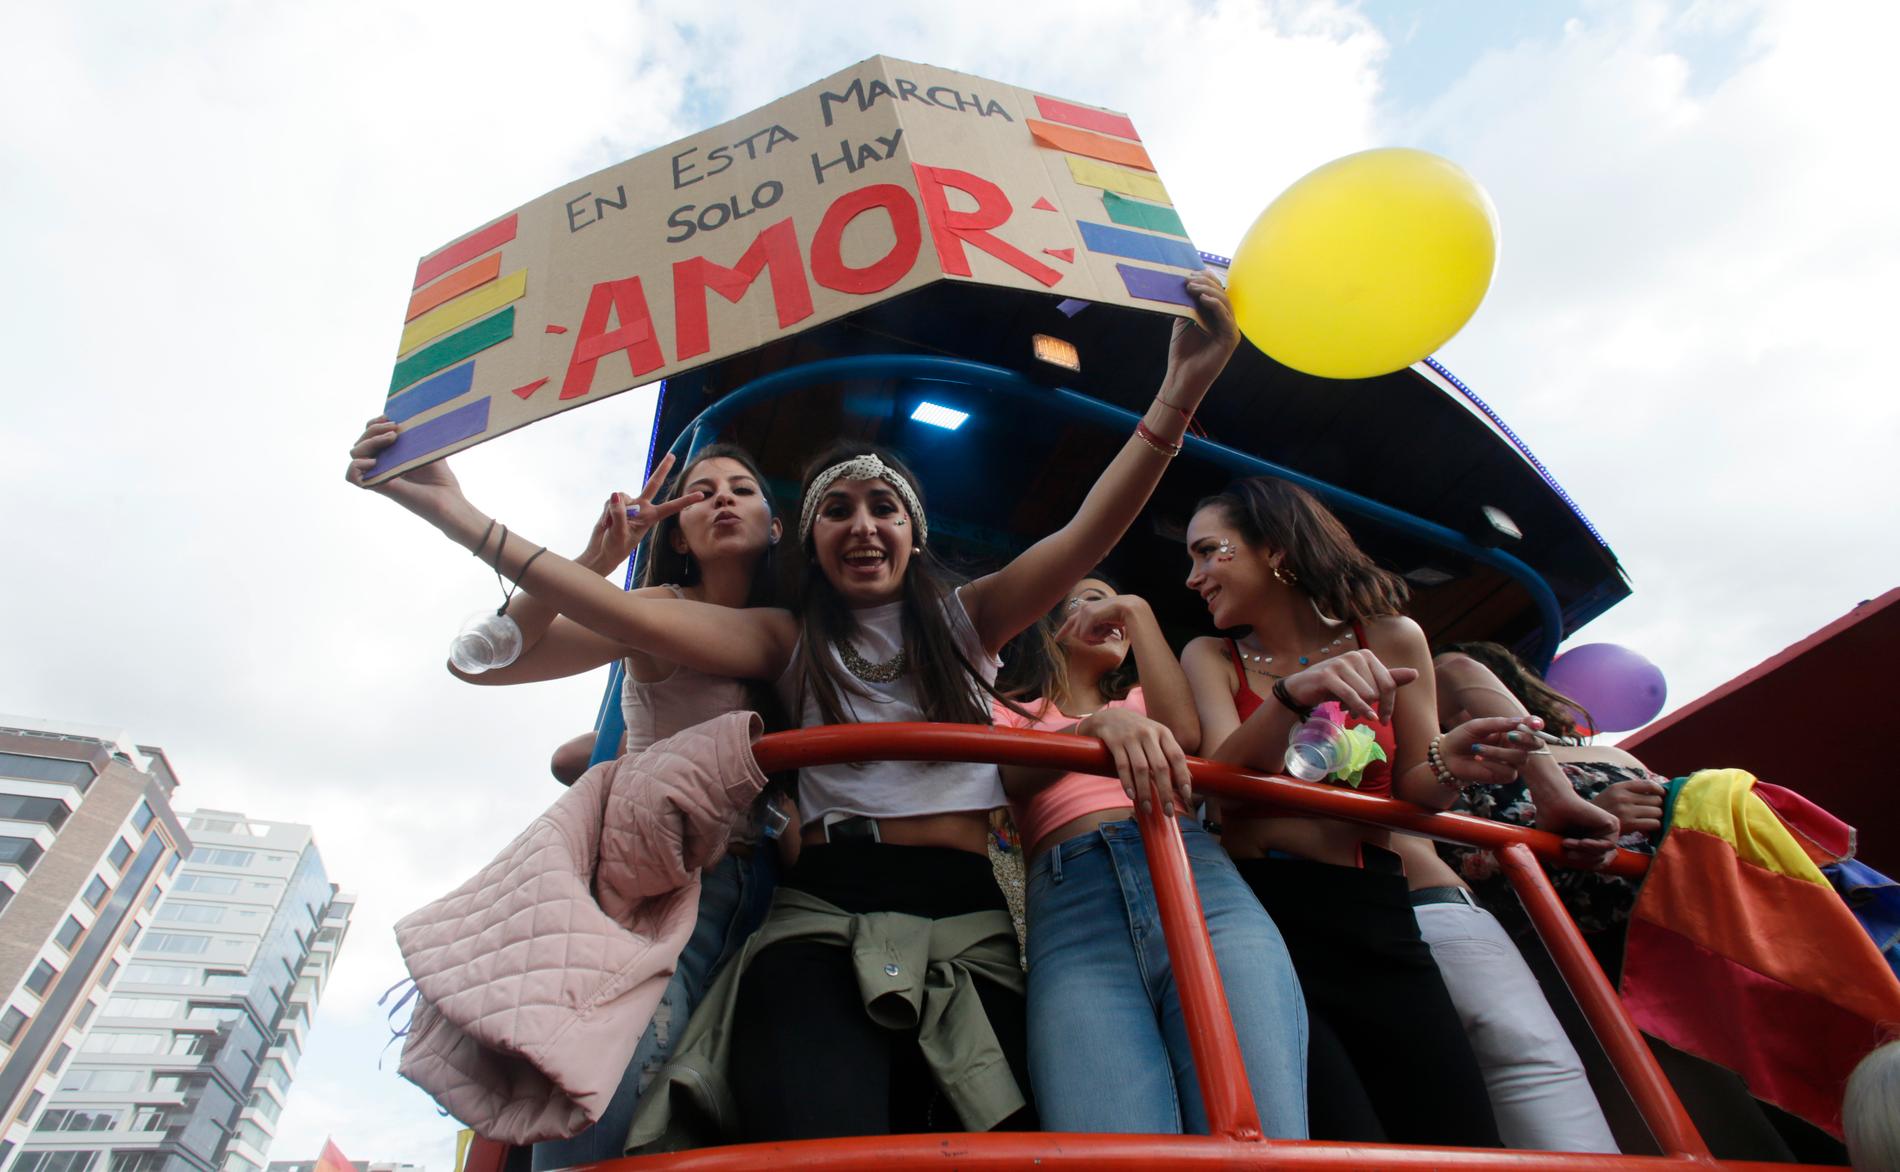 "I den här paraden finns bara kärlek", står det på skylten i Quito.